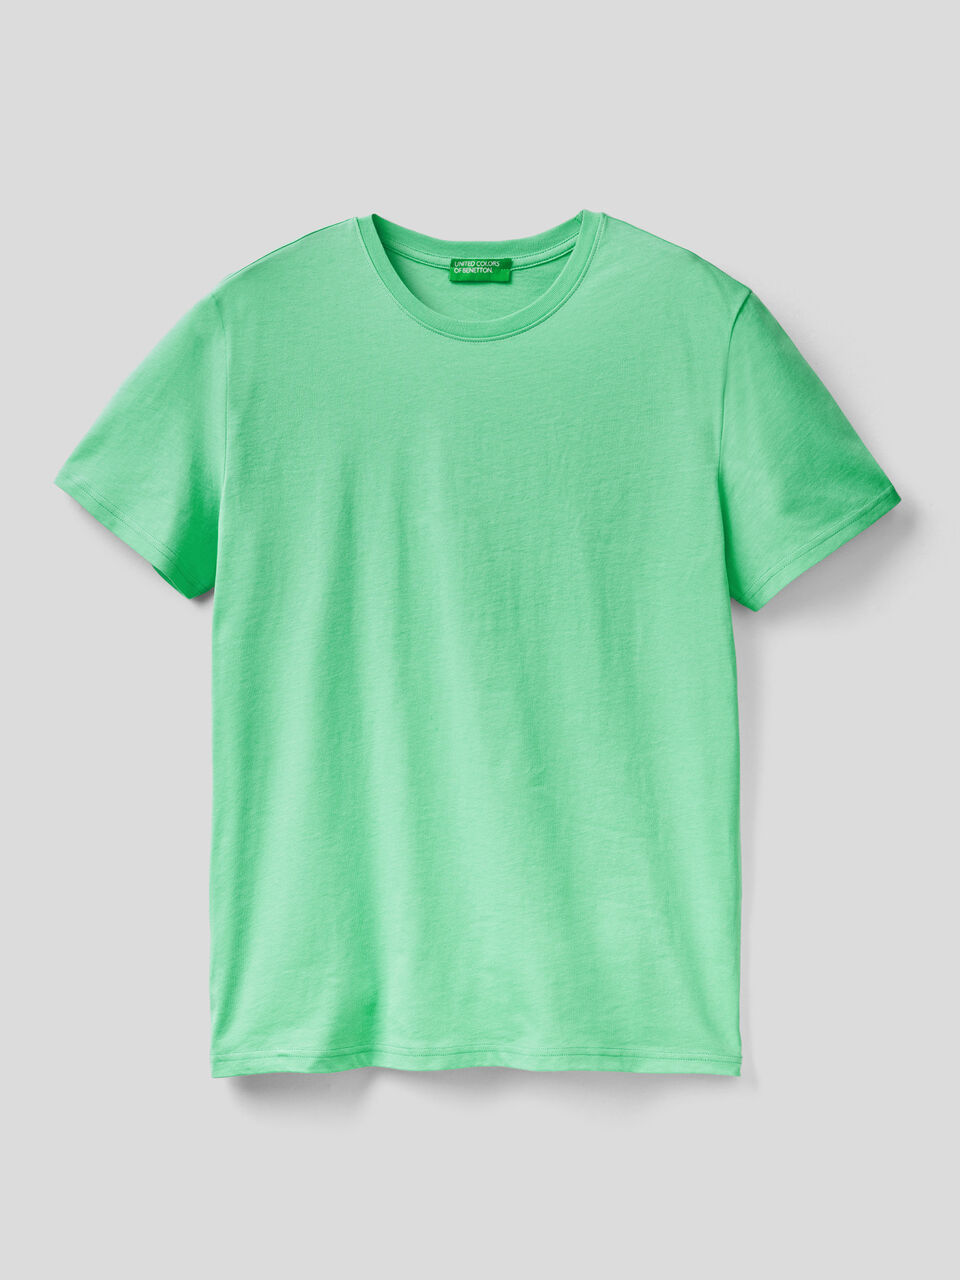 Camiseta verde agua - Turquesa